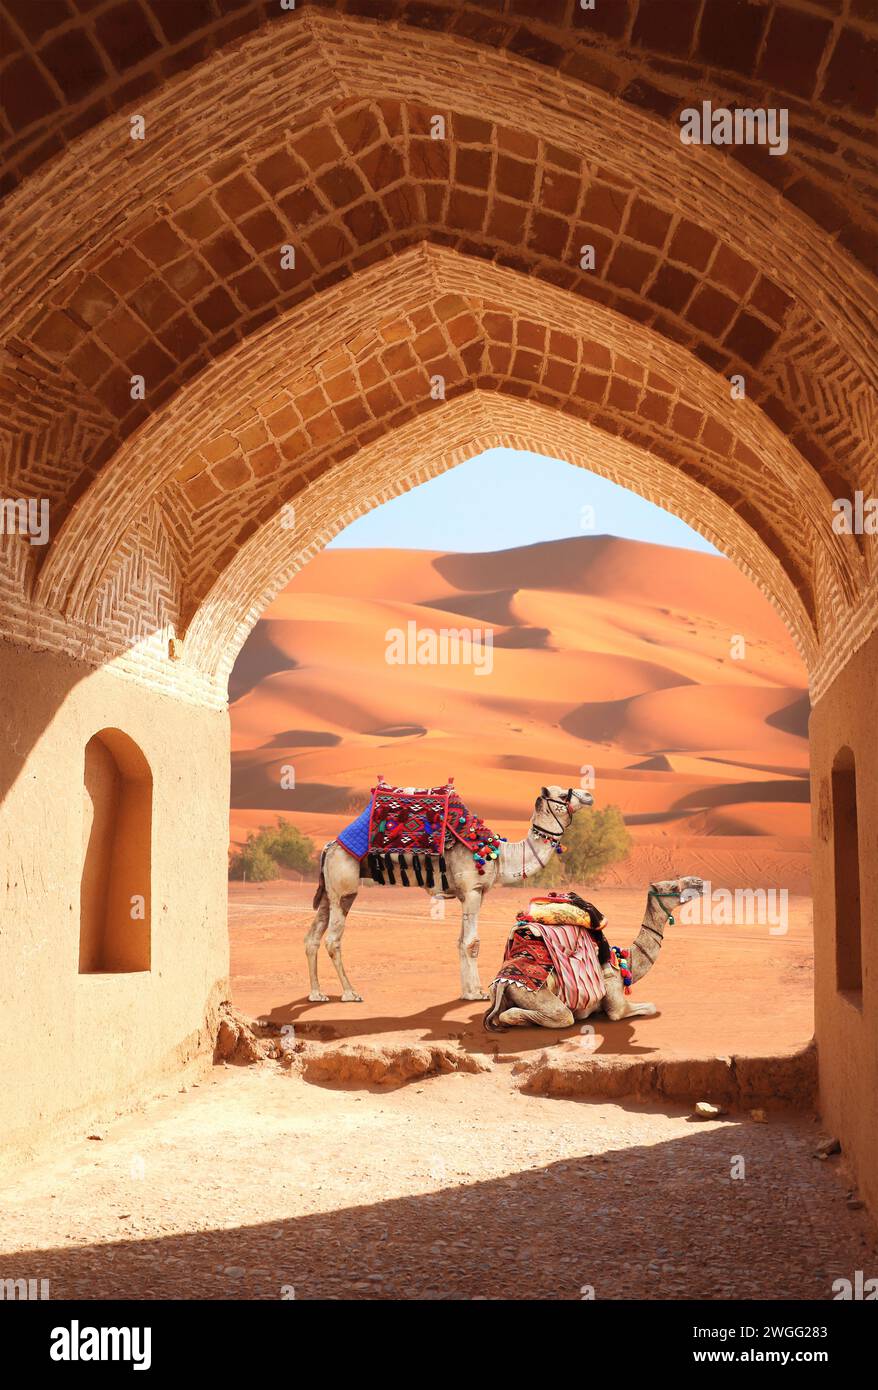 Der alte Bogen am Eingang zur Wüste. Blick auf die Sanddünen durch den Steinbogen. Reise-, Resort-, Urlaubs- und Urlaubskonzept. Wunderschöne Wüstenlandschaft wi Stockfoto